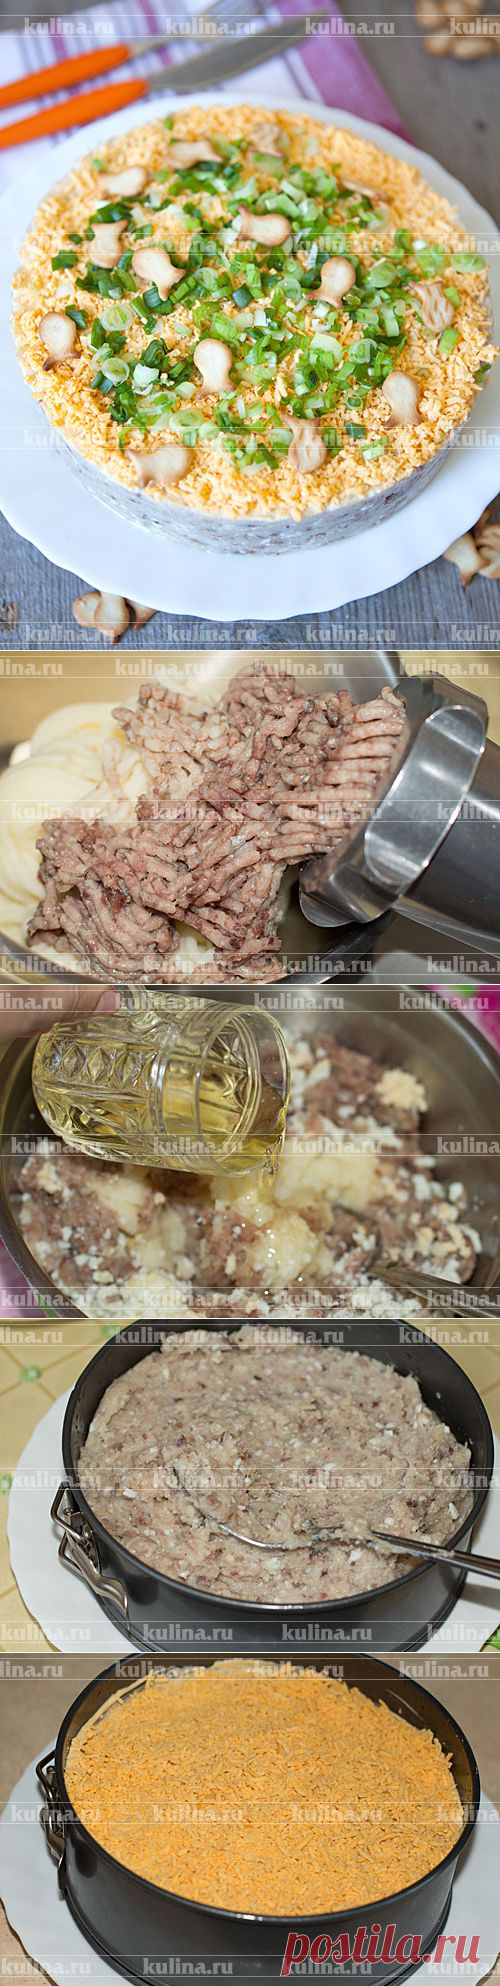 Закуска из селедки с картофелем – рецепт приготовления с фото от Kulina.Ru